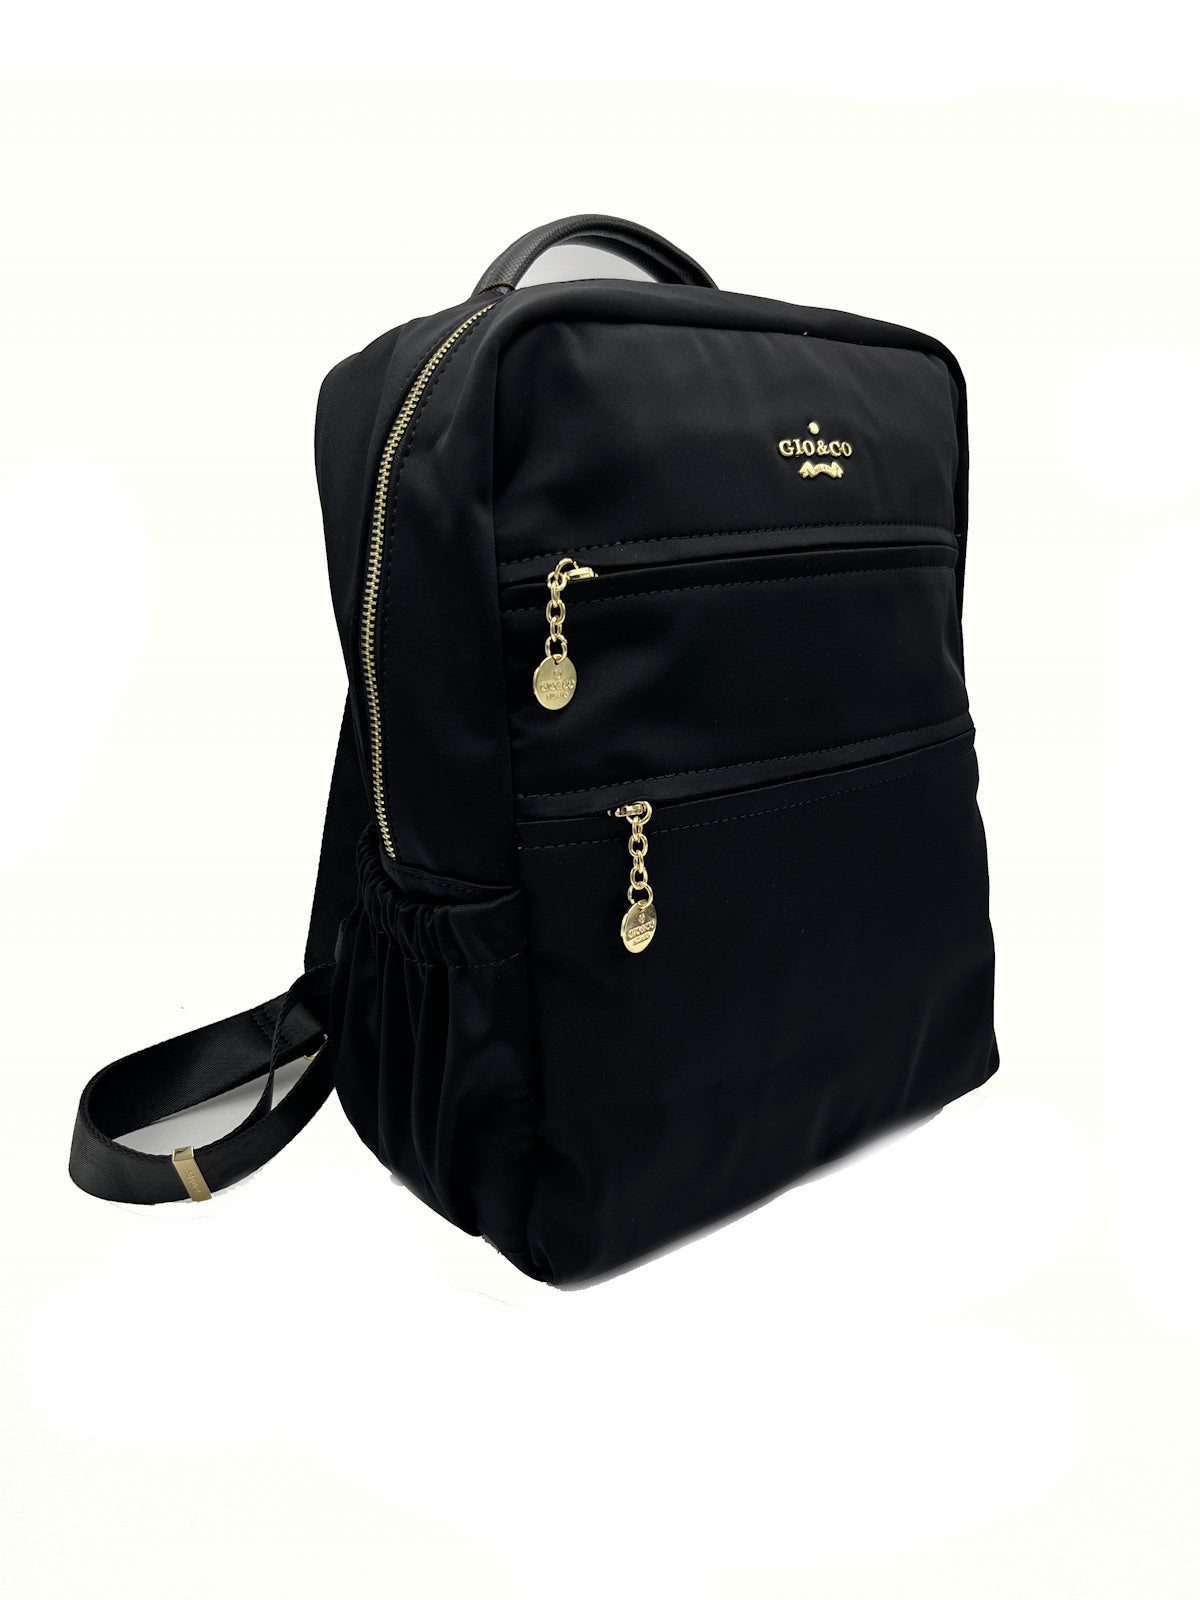 Brand GIO&amp;CO, Backpack, for women, art. N36.476